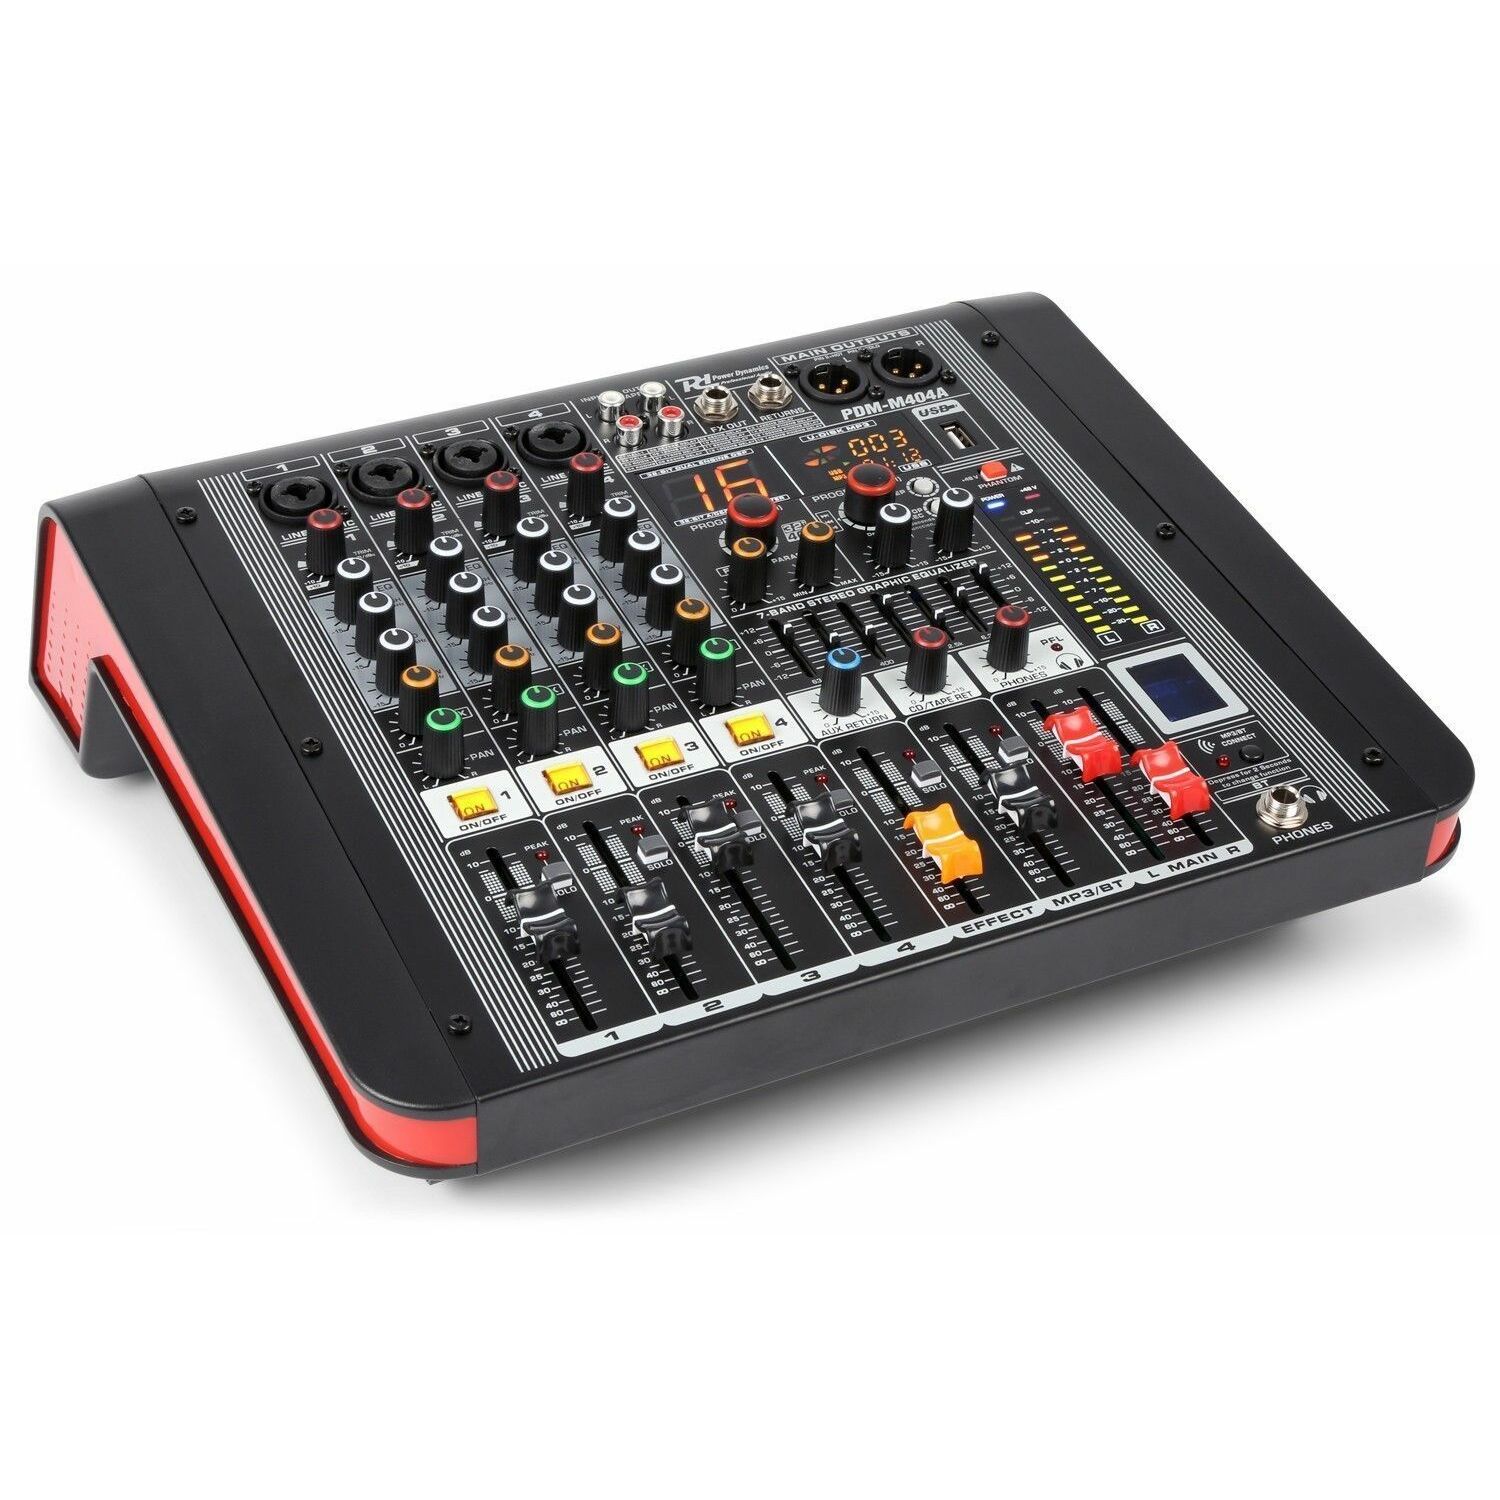 Retourdeal - Power Dynamics PDM-M404A 4 kanaals muziek mixer /